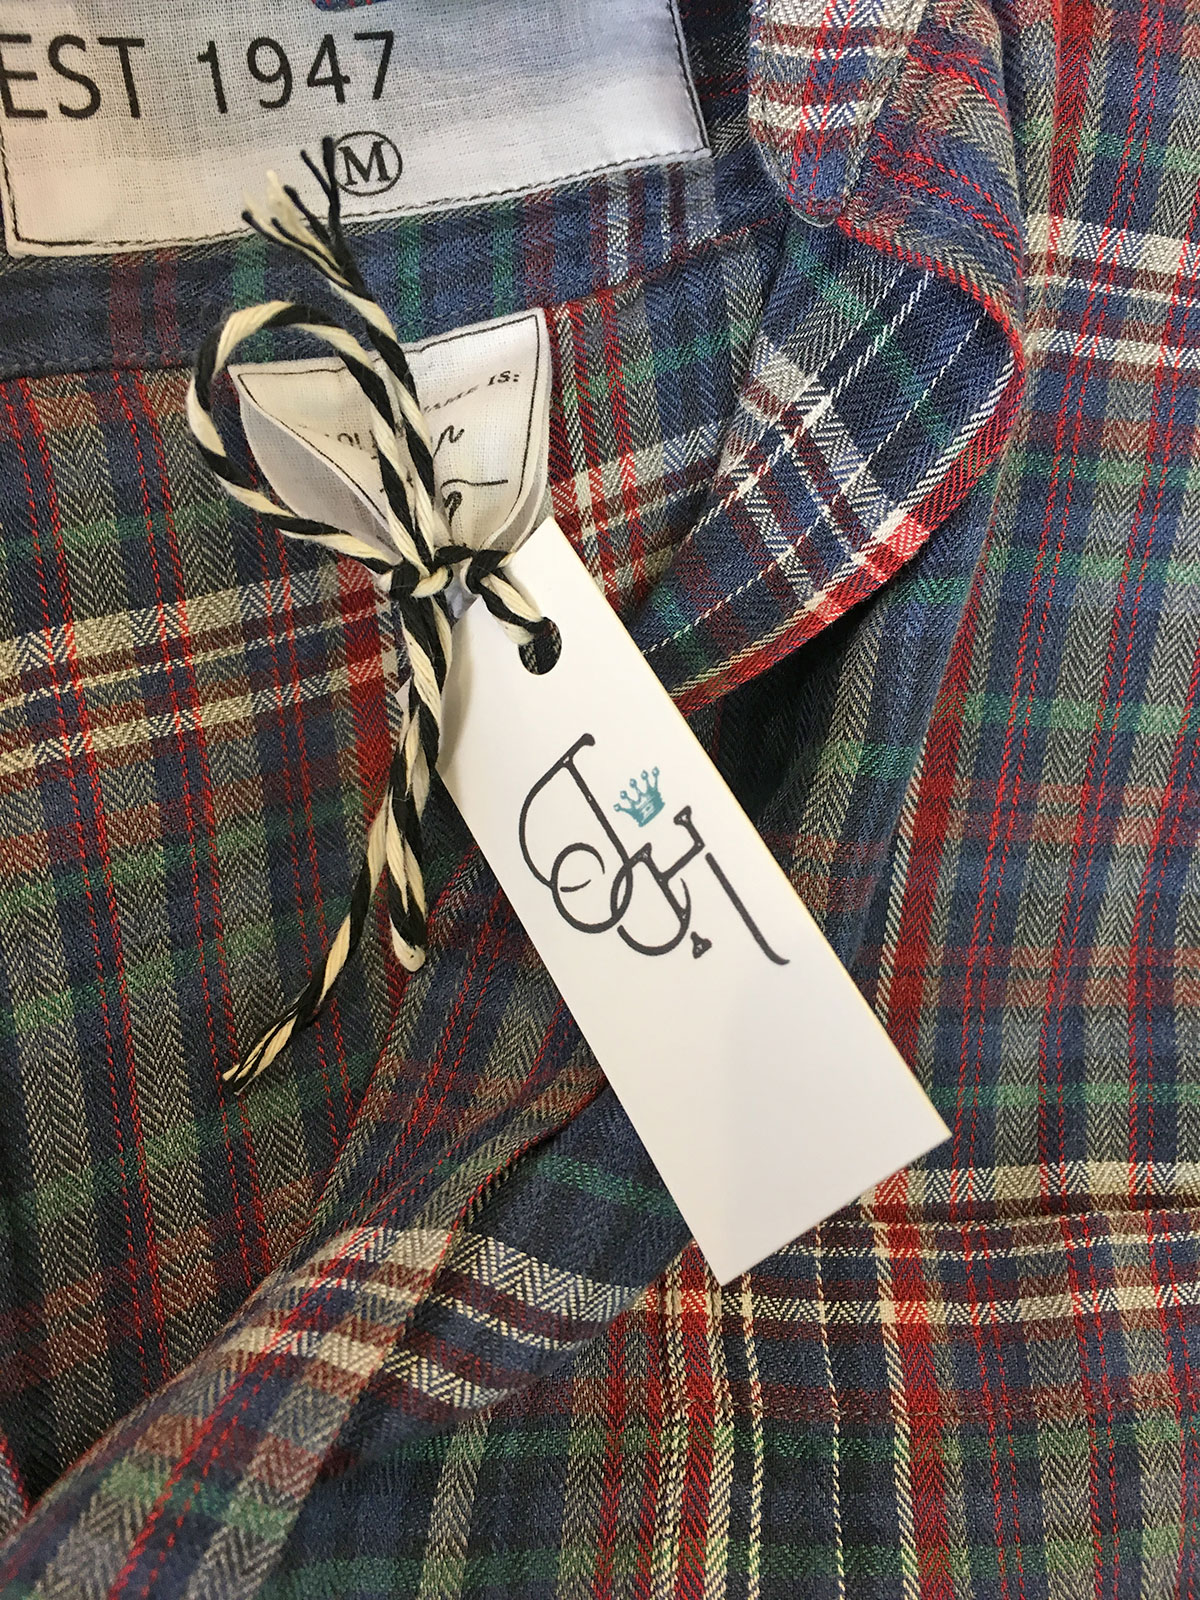 clothing hang tag design